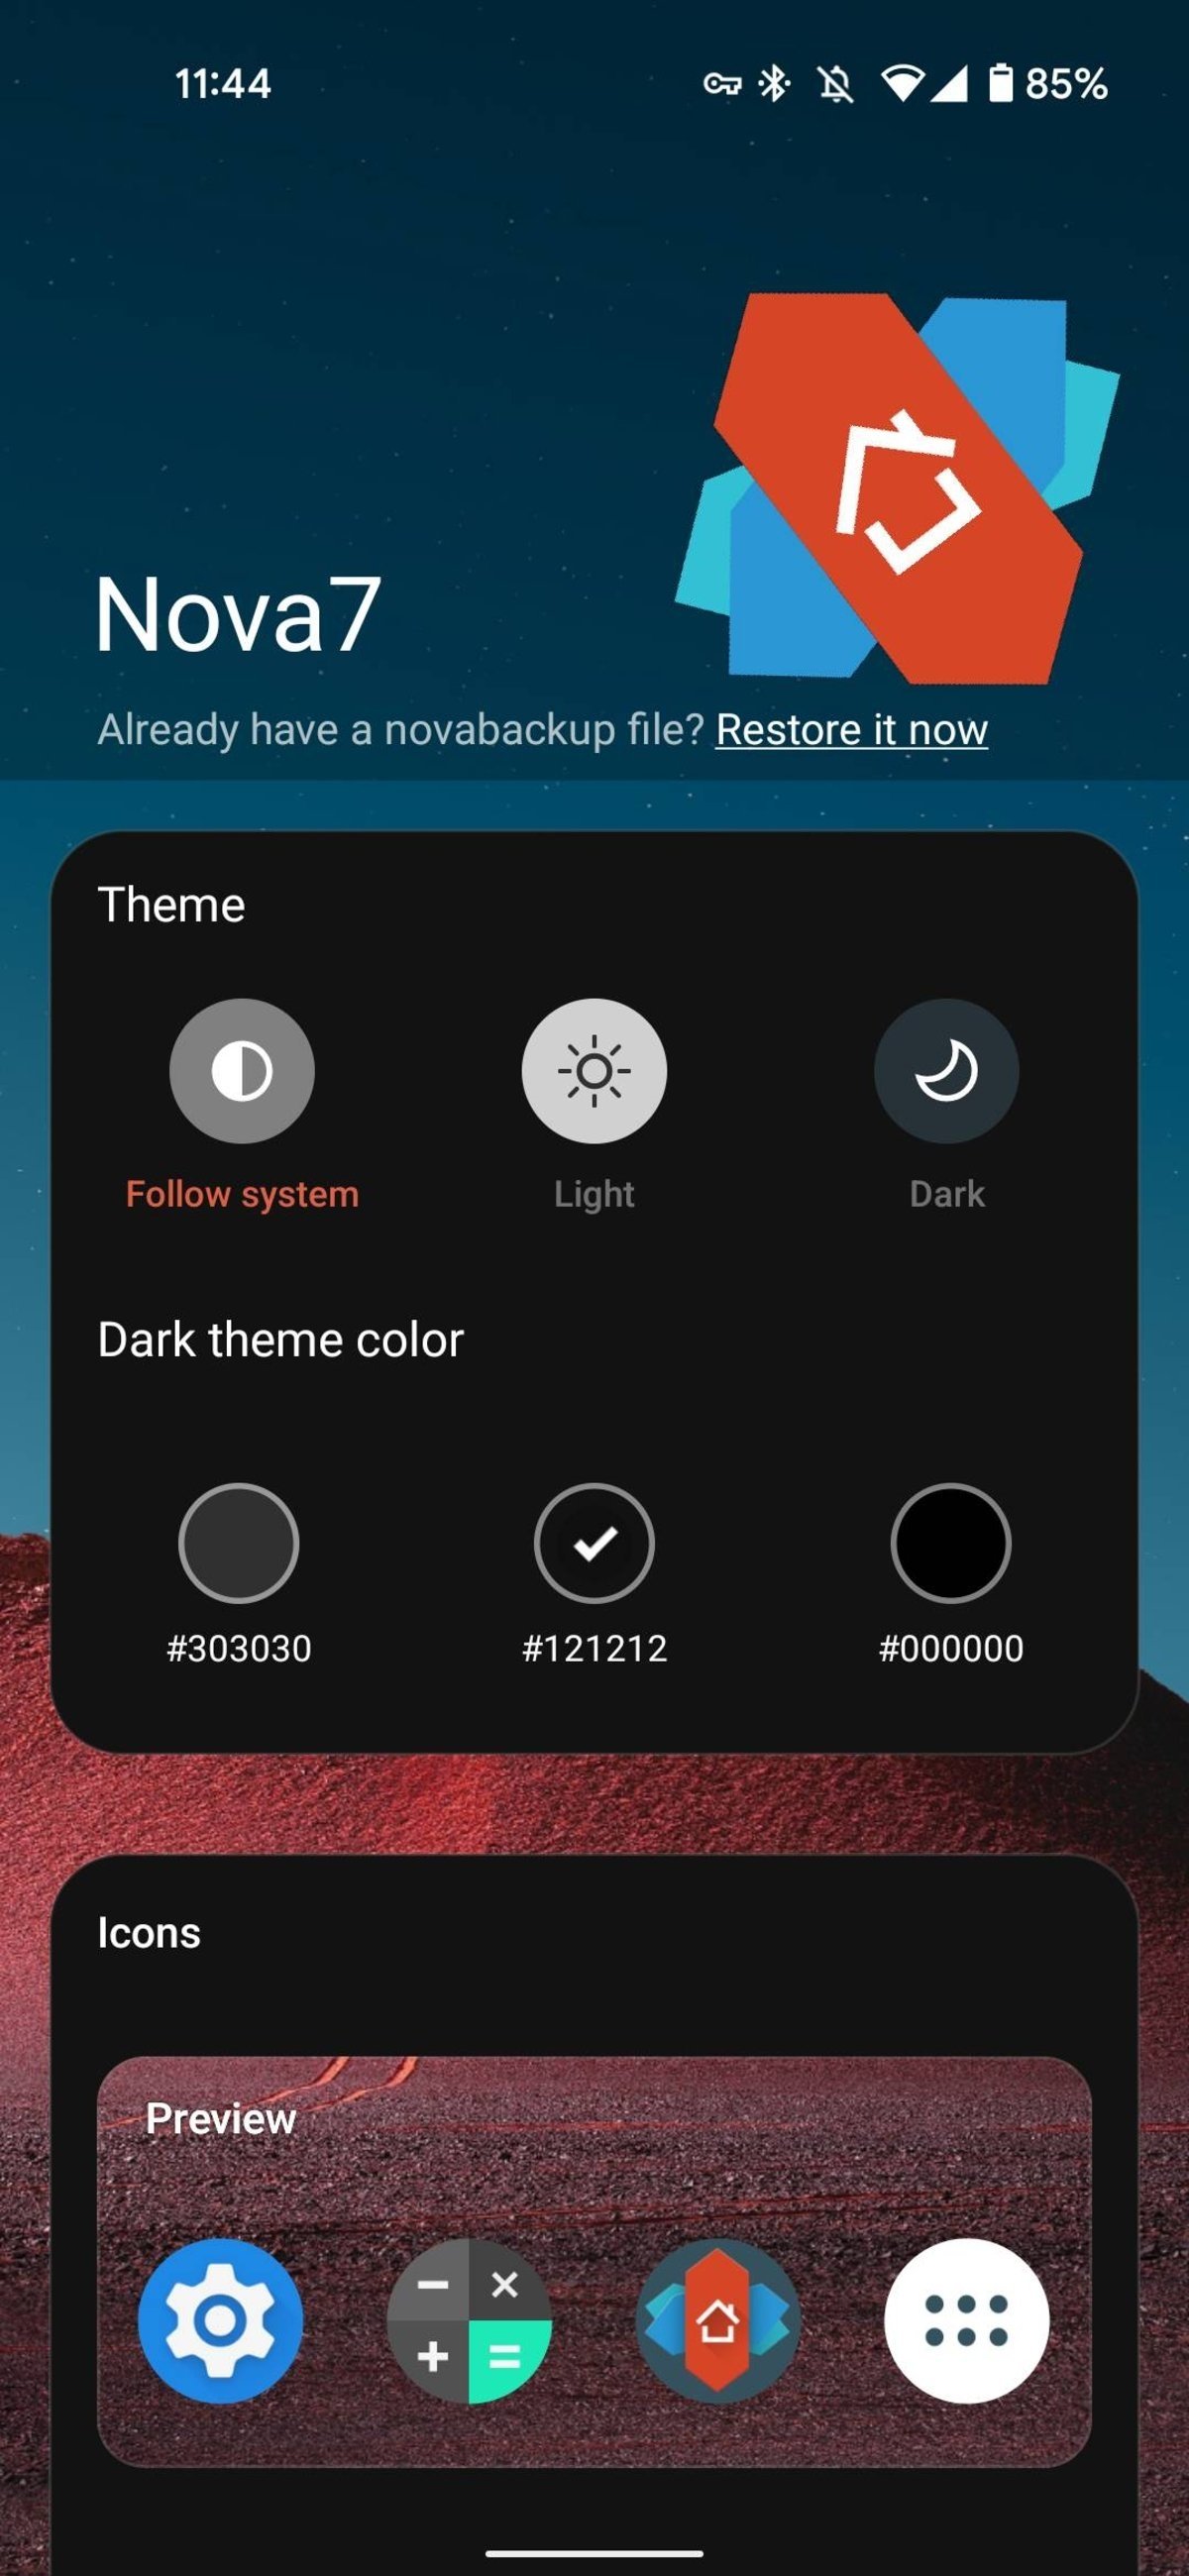 Nova Launcher 7 ya disponible para todos en Google Play: estas son las principales novedades